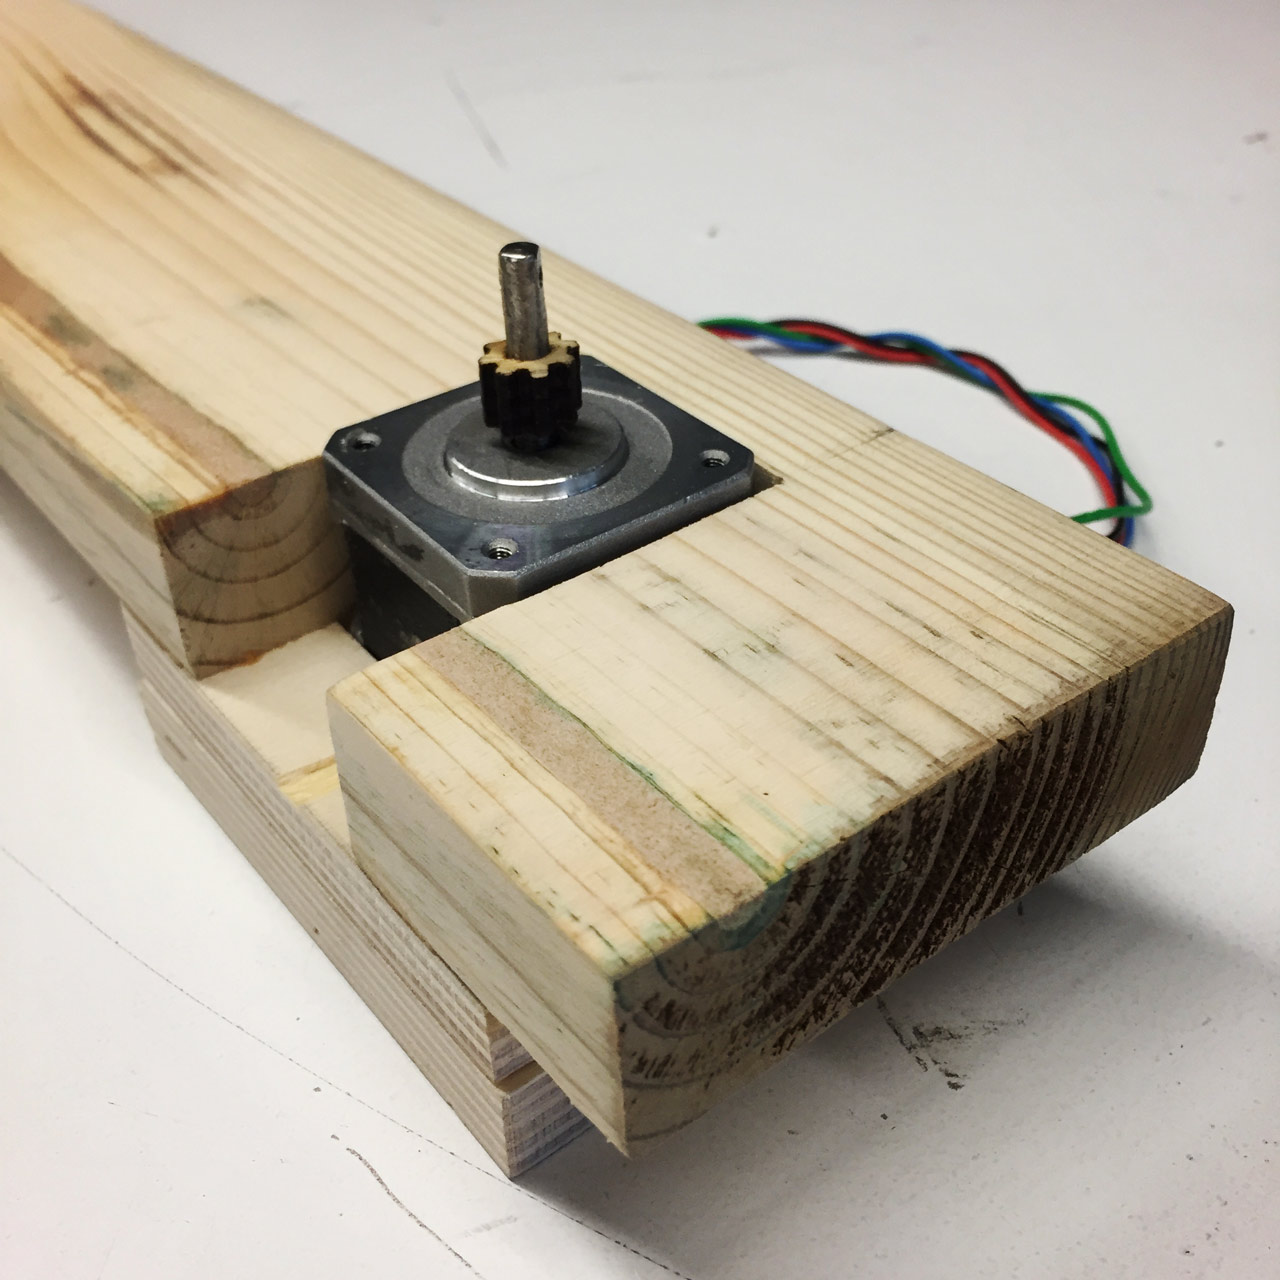 Motor embedded in wood